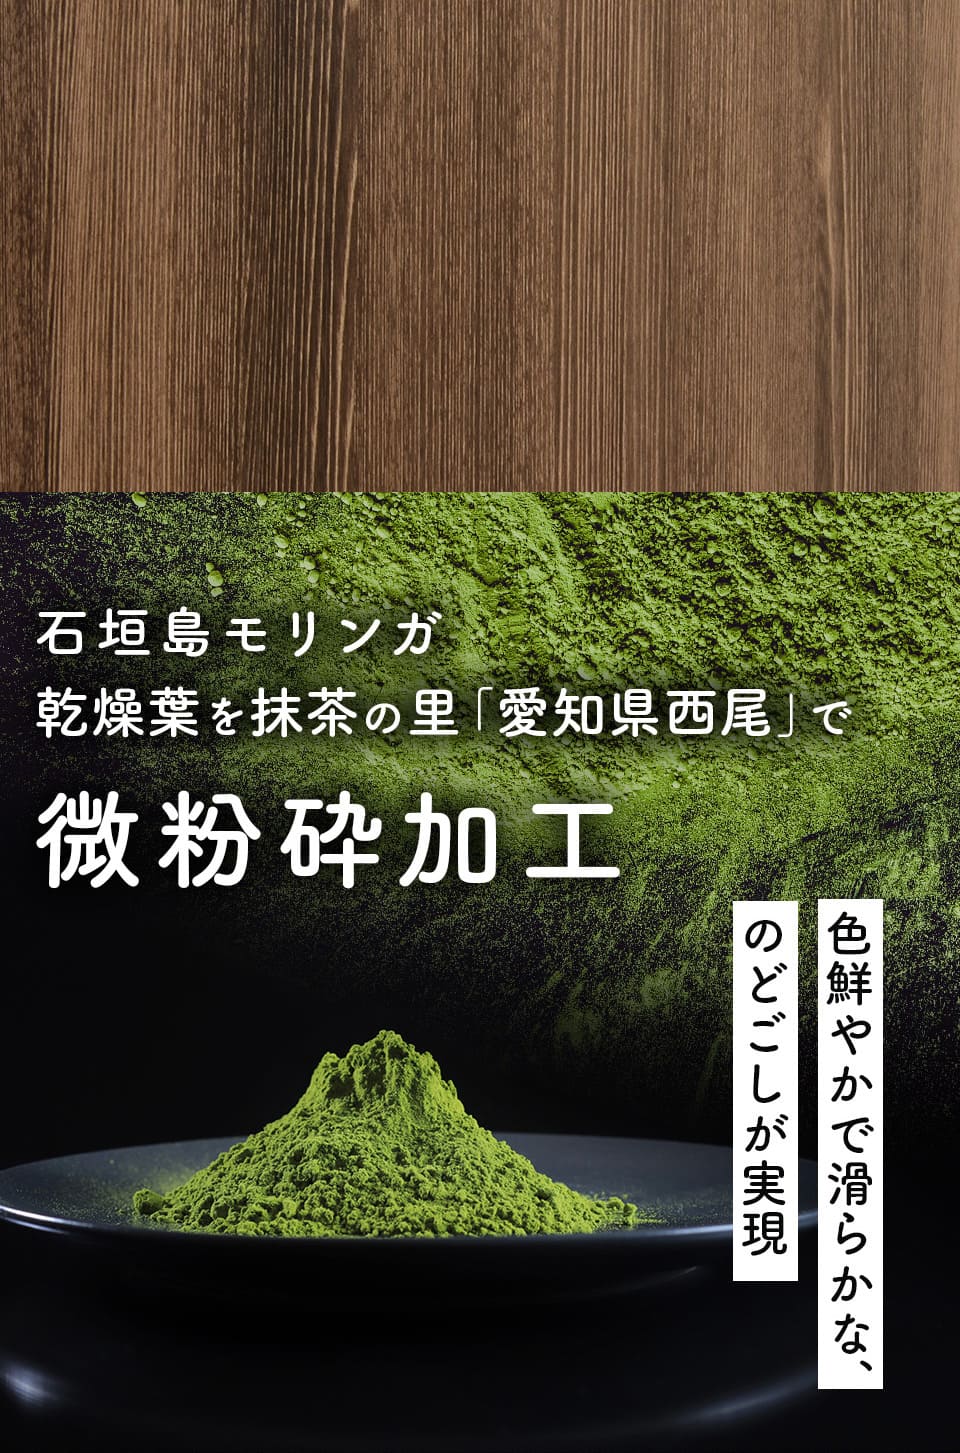 石垣島モリンガ乾燥葉を抹茶の里「愛知県西尾」で微粉砕加工